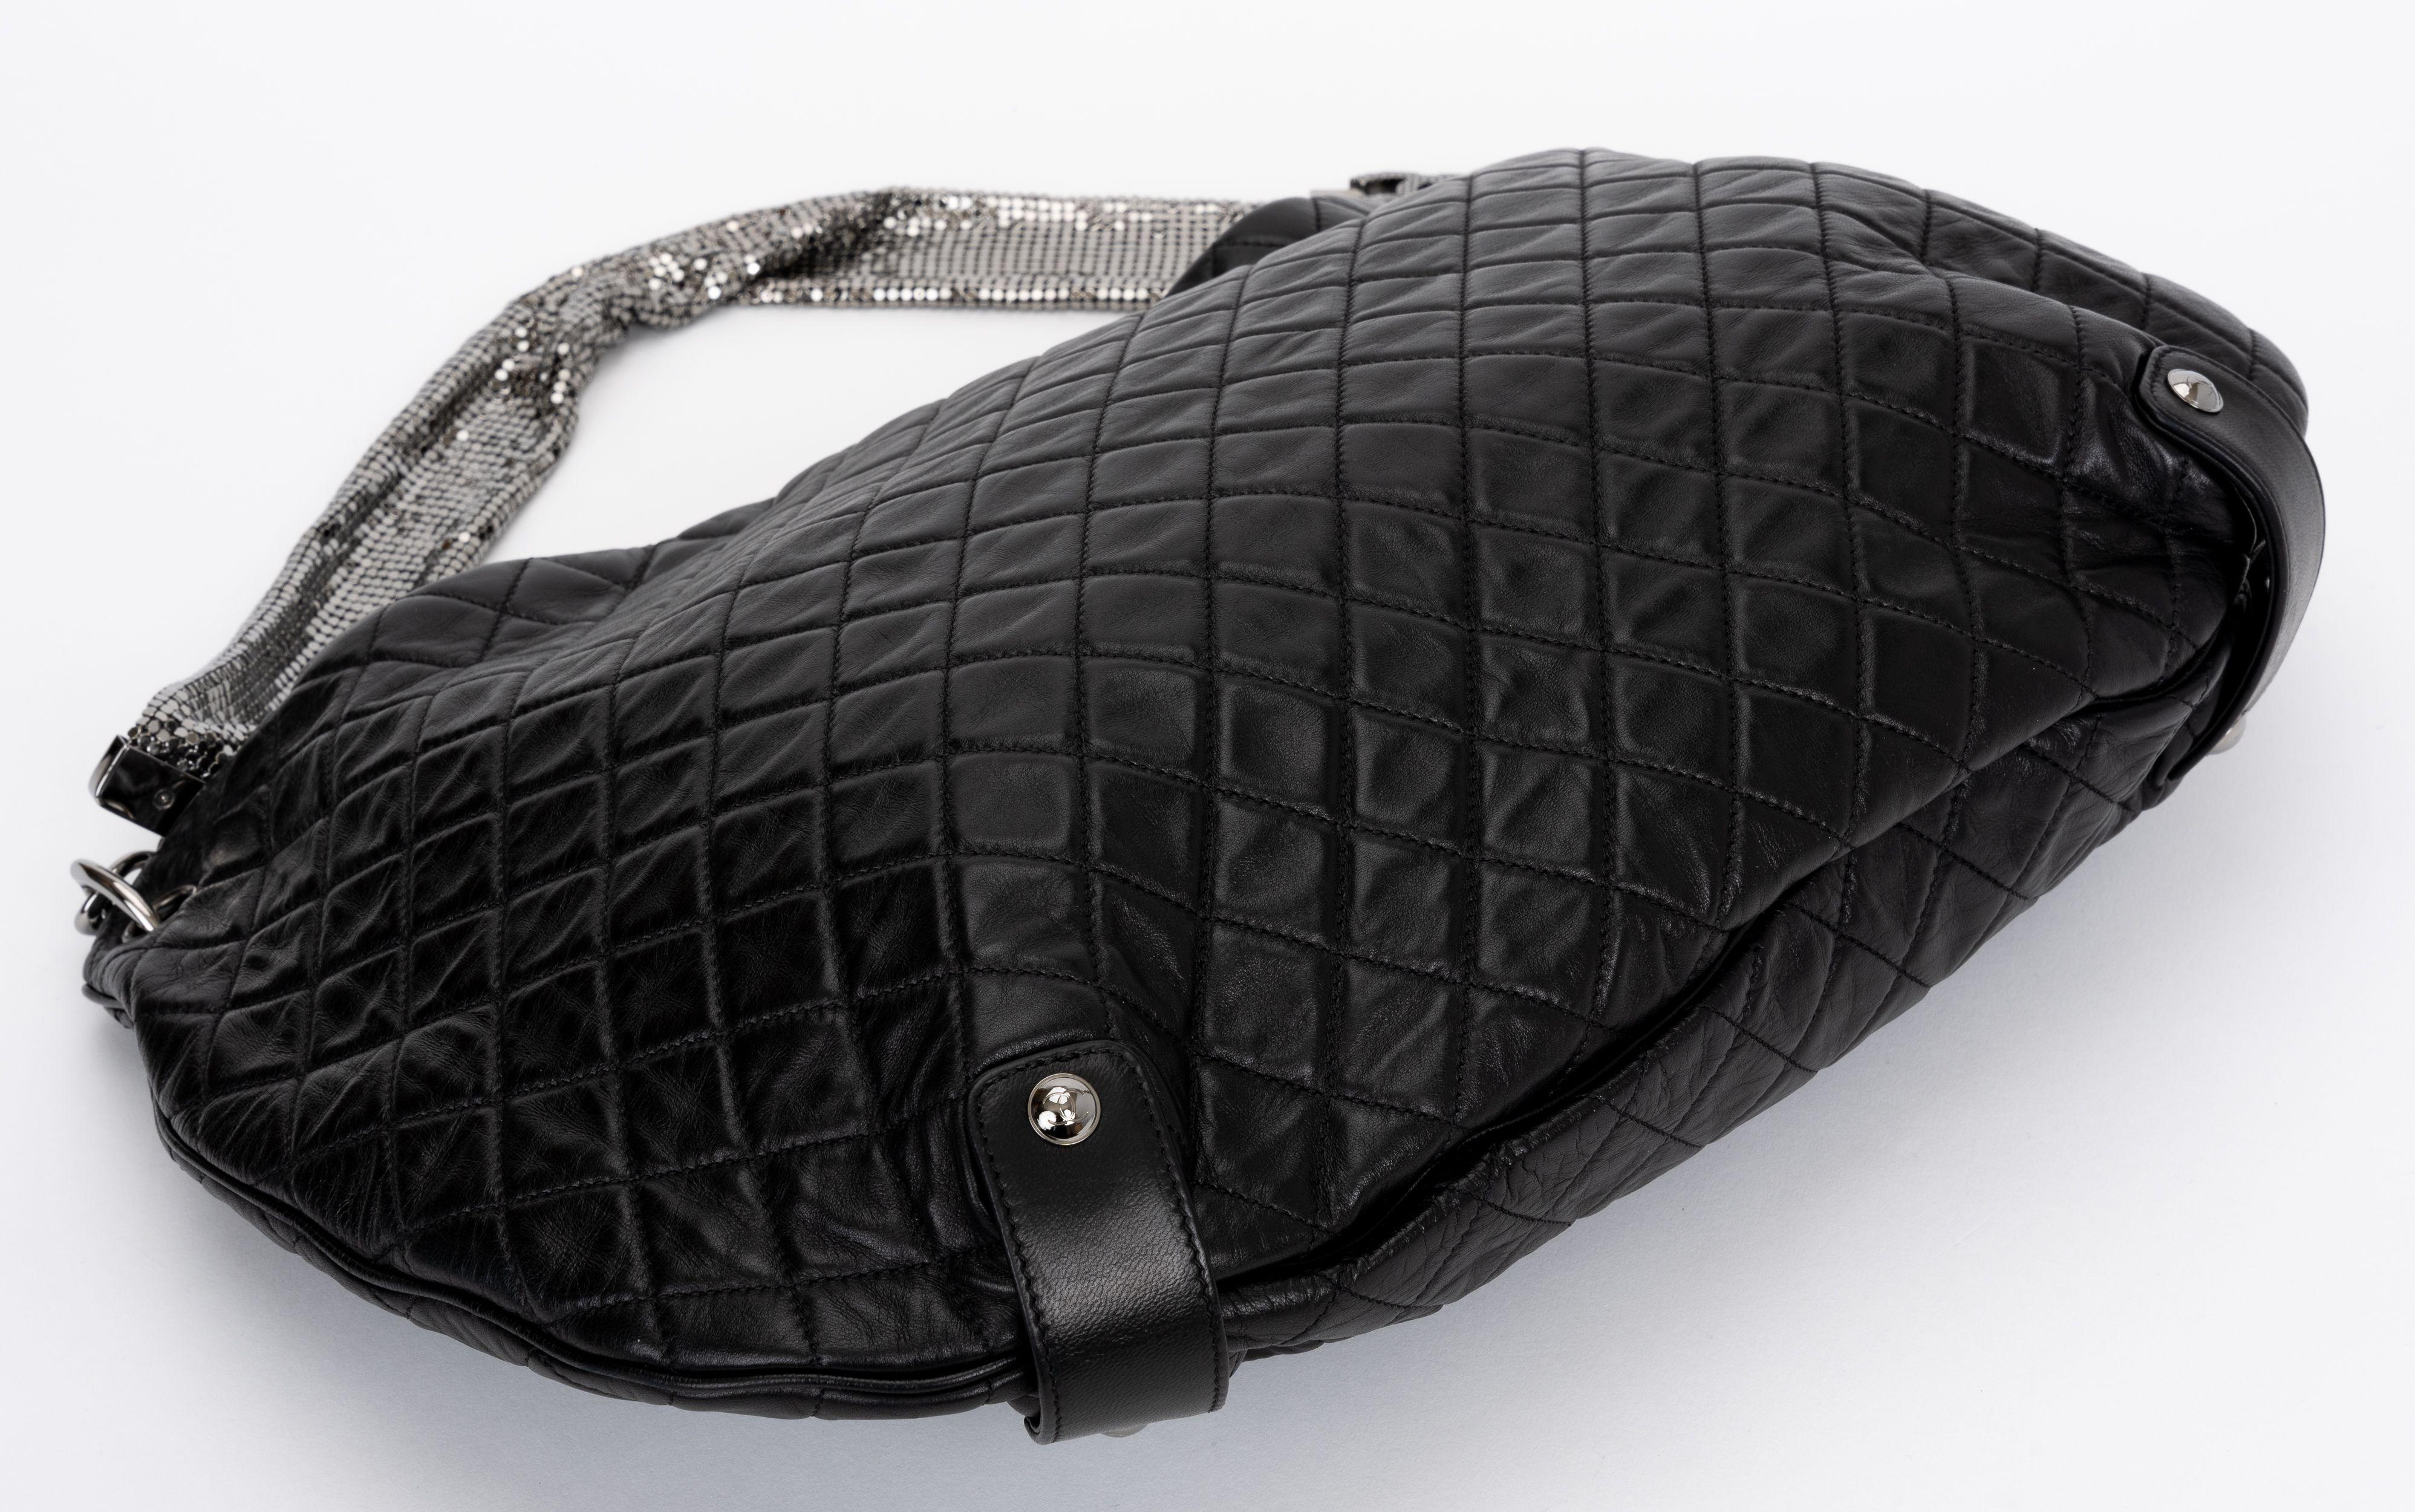 Le sac hobo moyen en cuir d'agneau matelassé noir de Chanel présente un design souple pour le jour et la nuit avec une sangle en maille argentée.
Epaule de 9